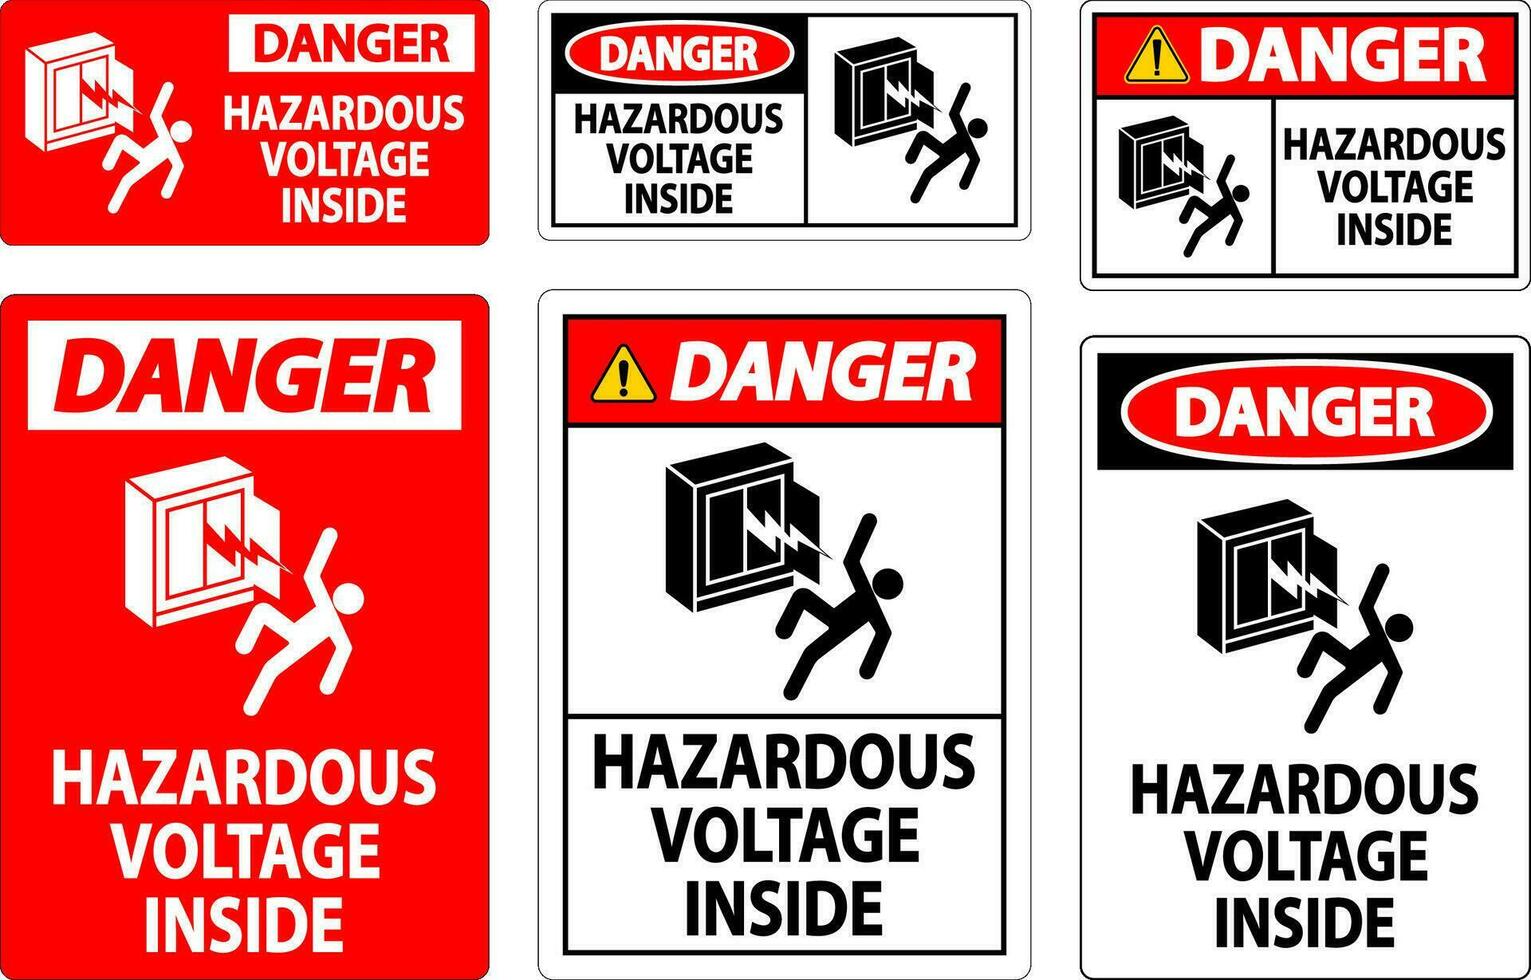 Danger Sign Hazardous Voltage Inside vector